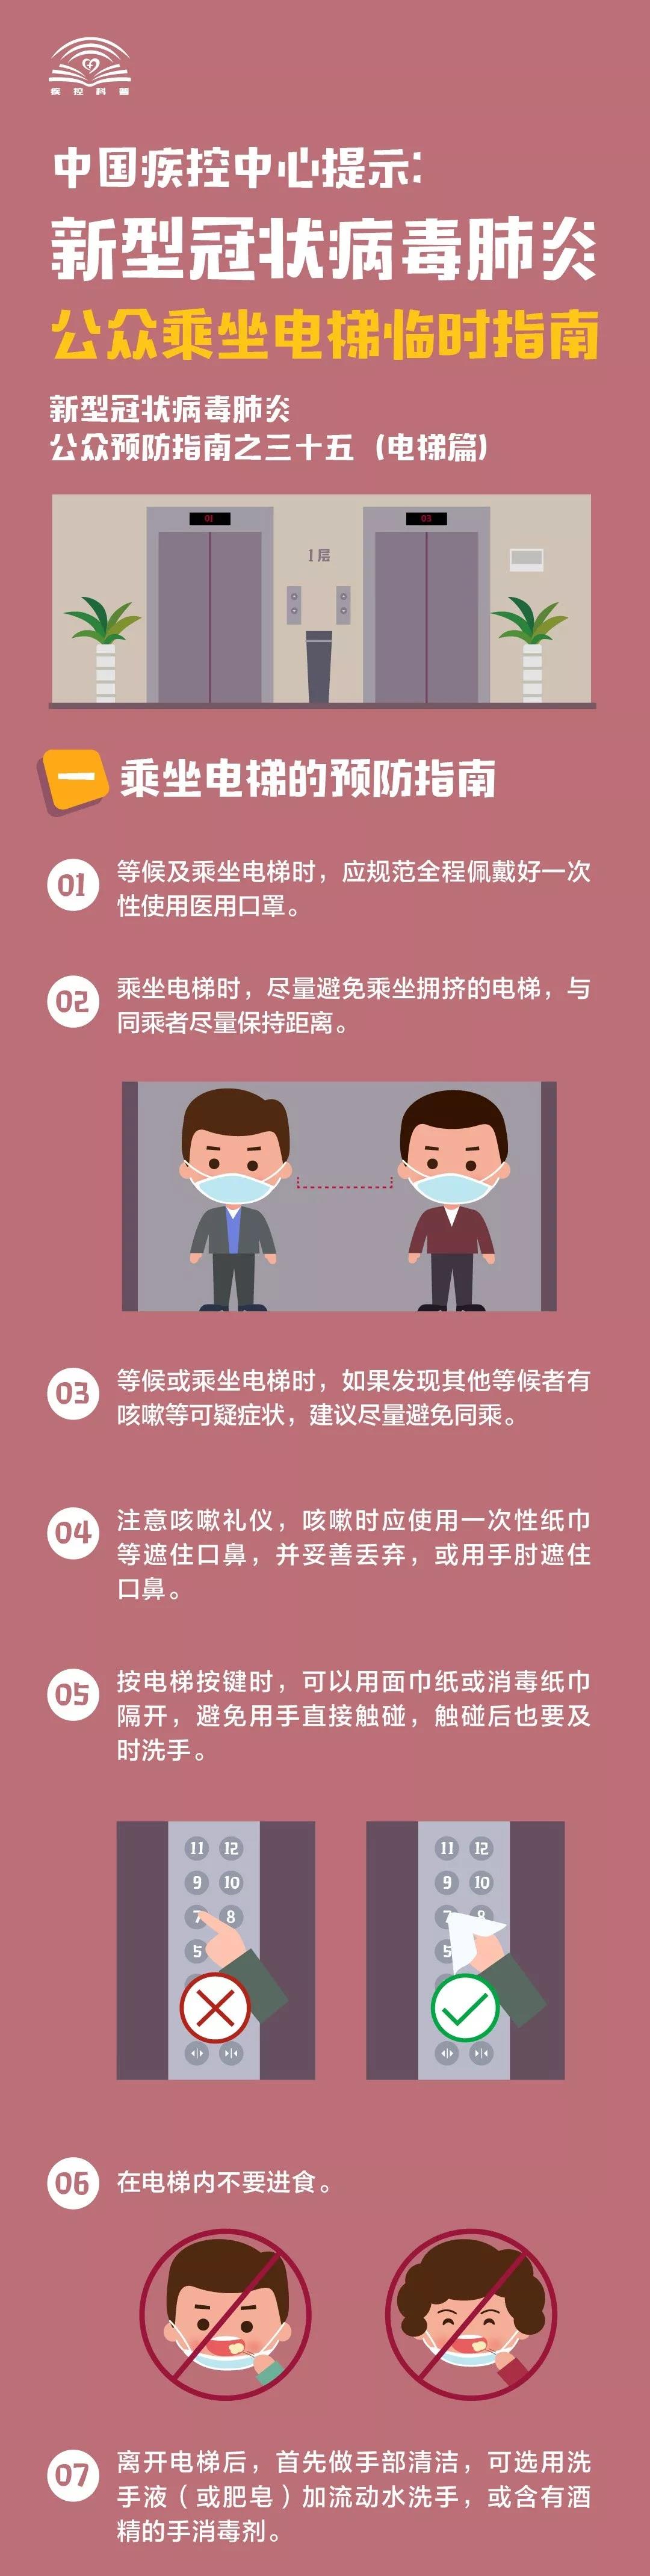 中国疾控中心提示：公众乘坐电梯临时指南（电梯篇）(2020-2-23)